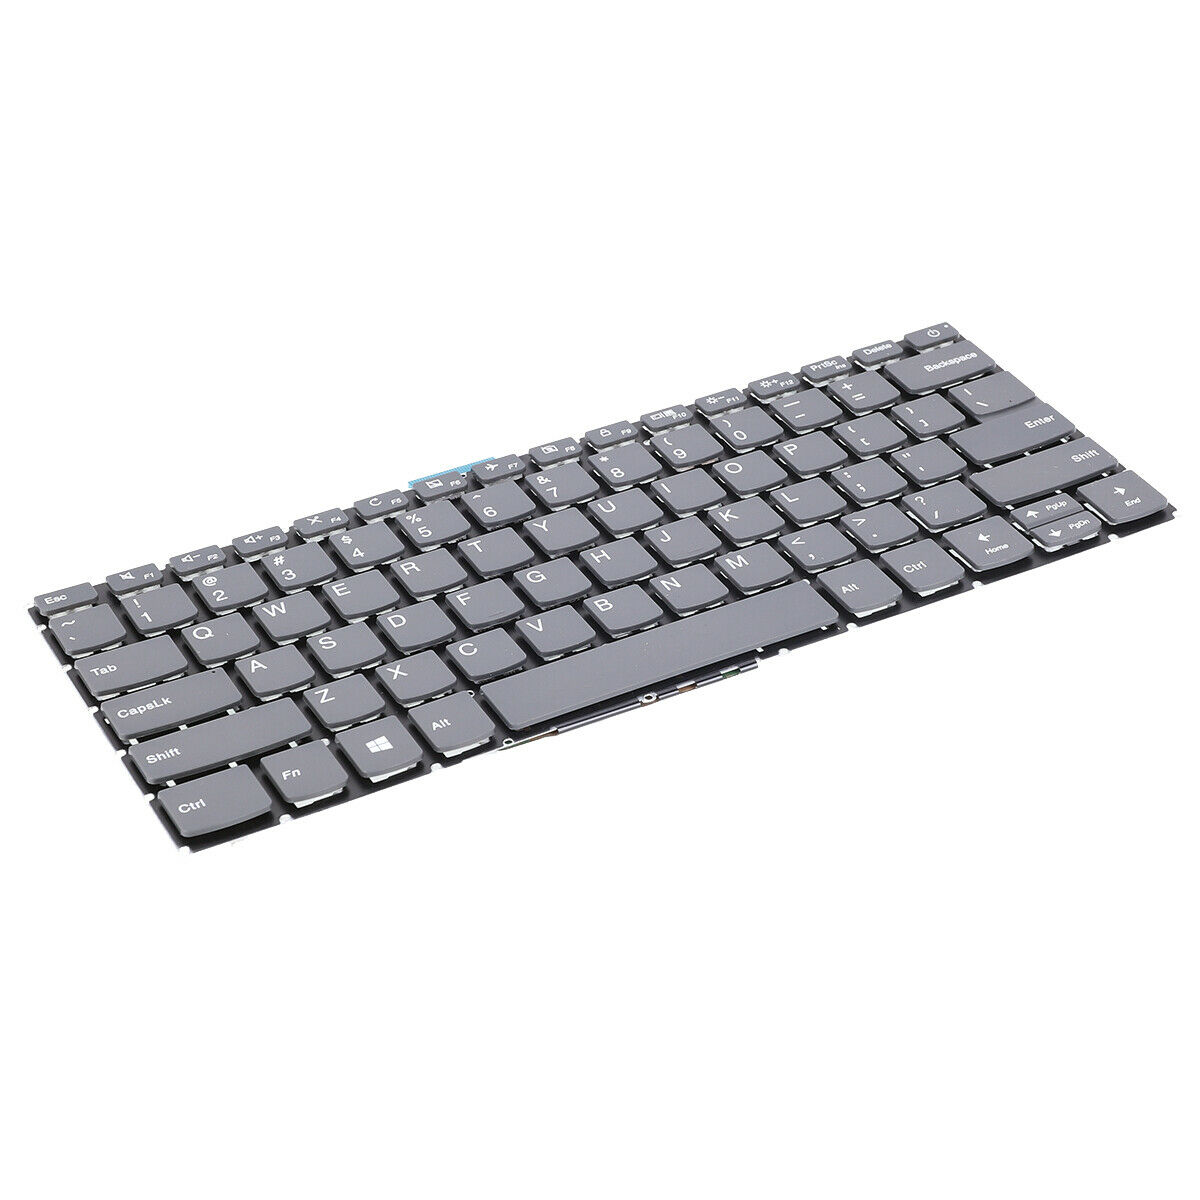 Bàn phím dành cho Laptop Lenovo IdeaPad S145-14IIL S145-14API S145-14IGM S145-14IKB S145-14IWL Keyboard US Black - Có nút nguồn